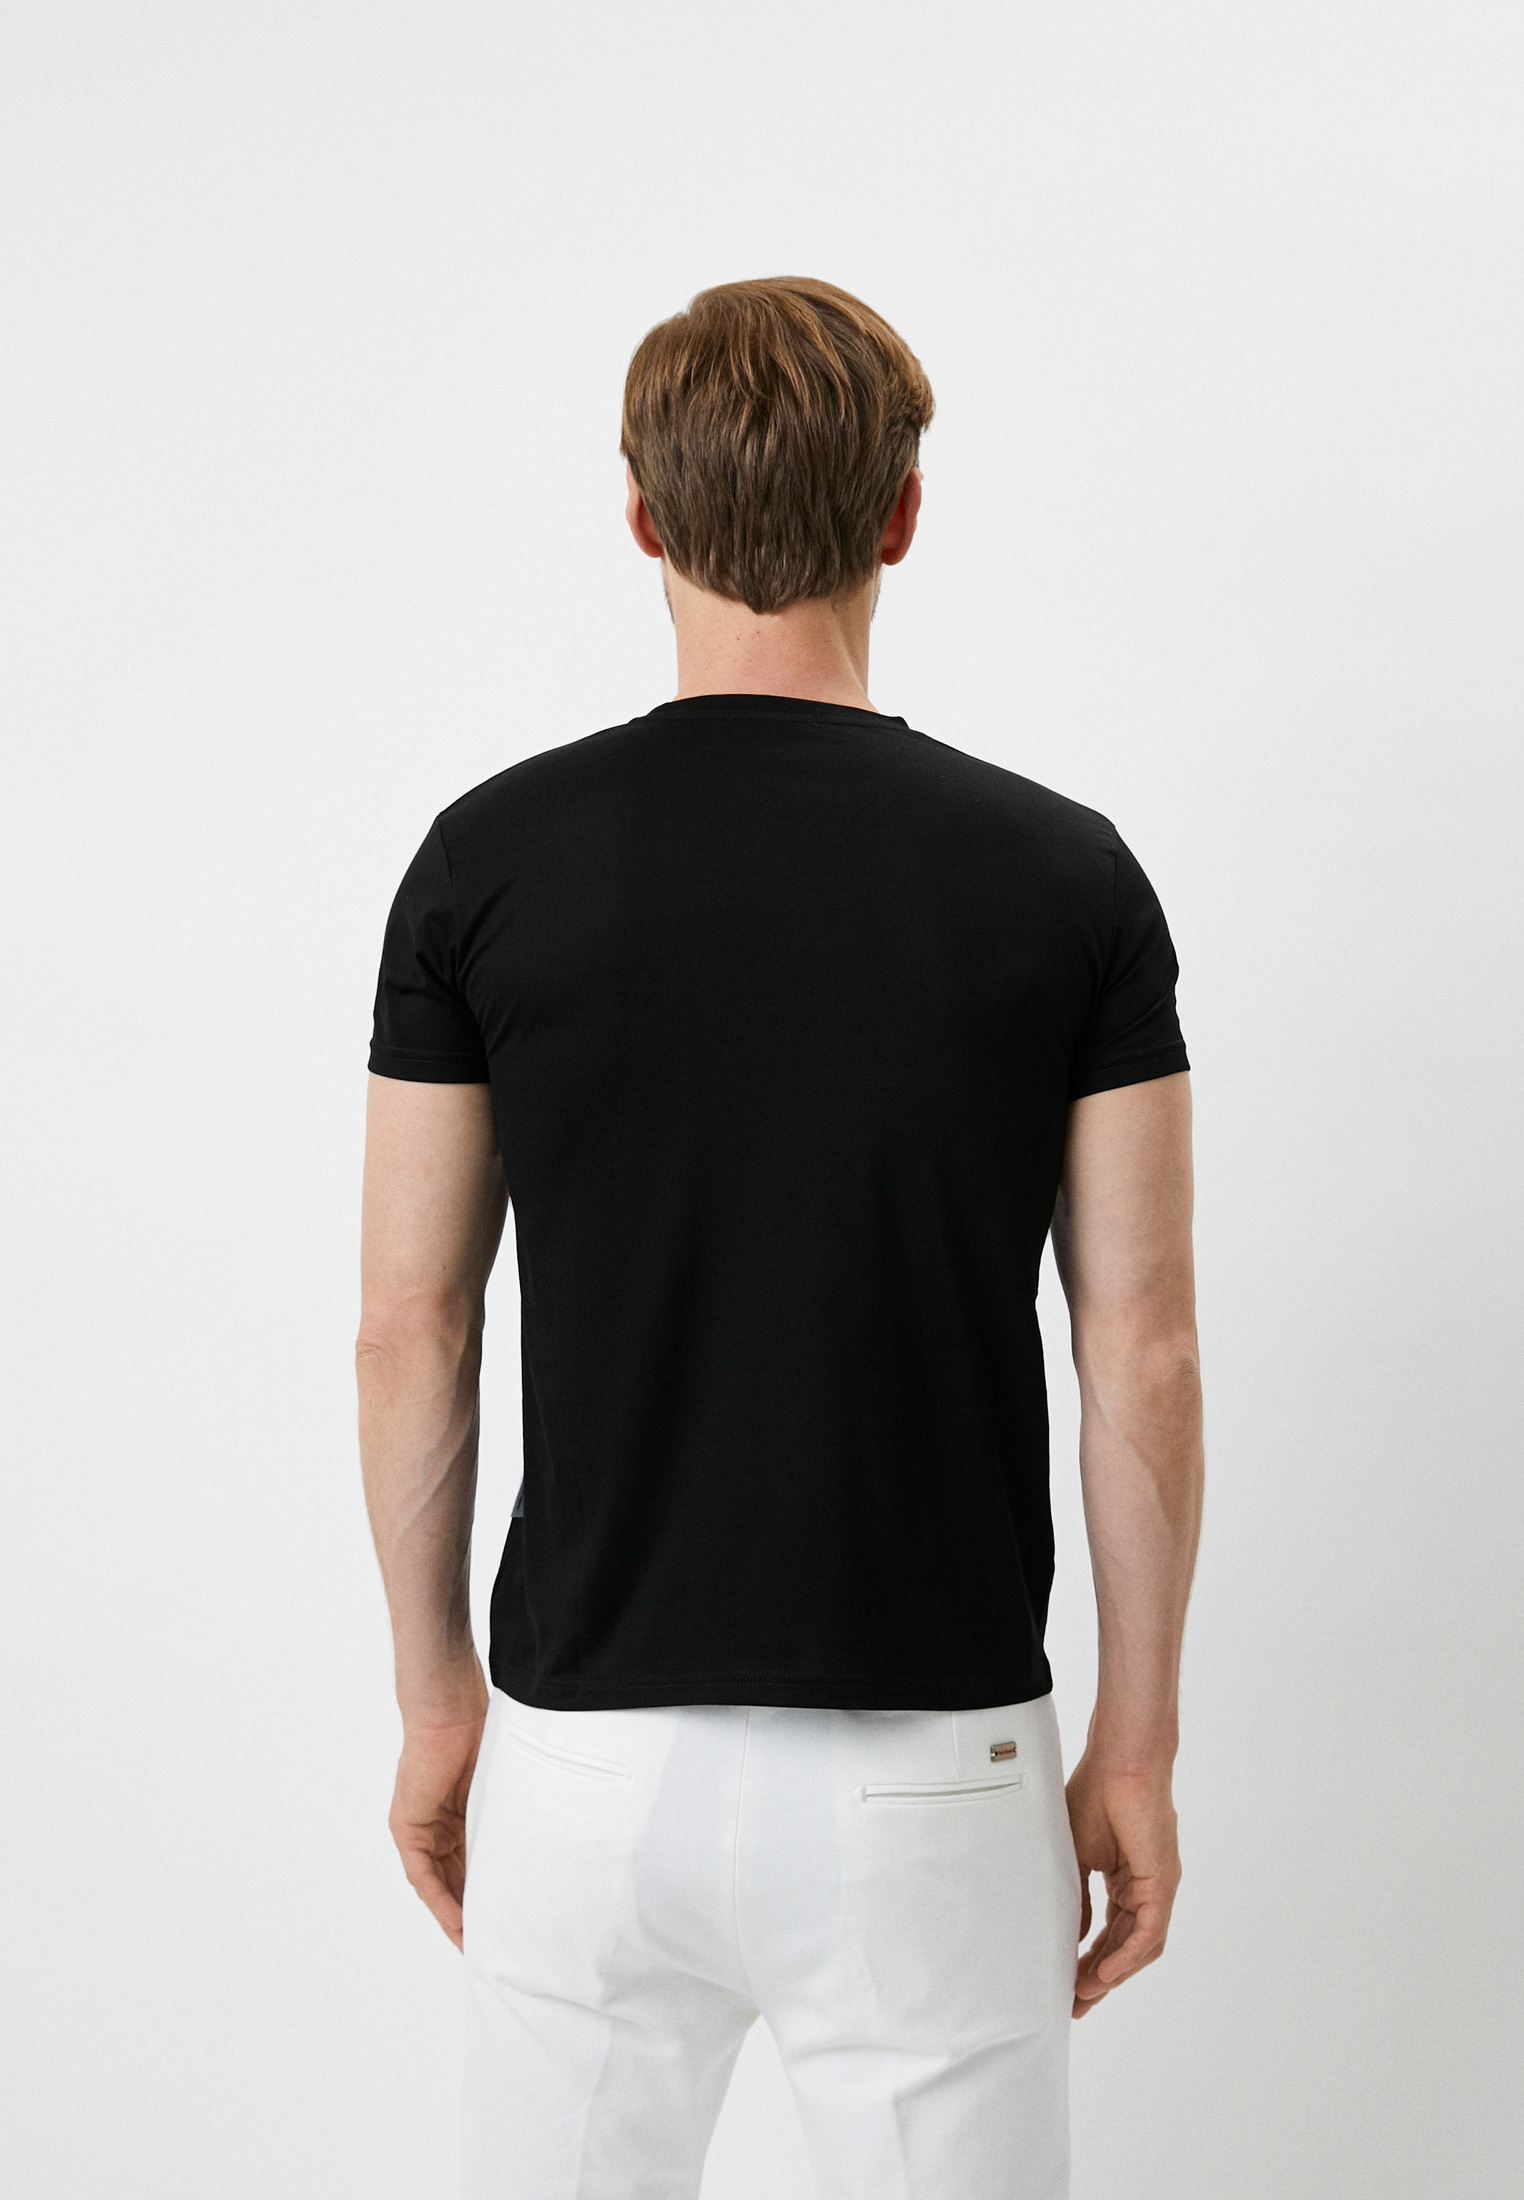 Мужская футболка Baldinini (Балдинини) M603: изображение 3